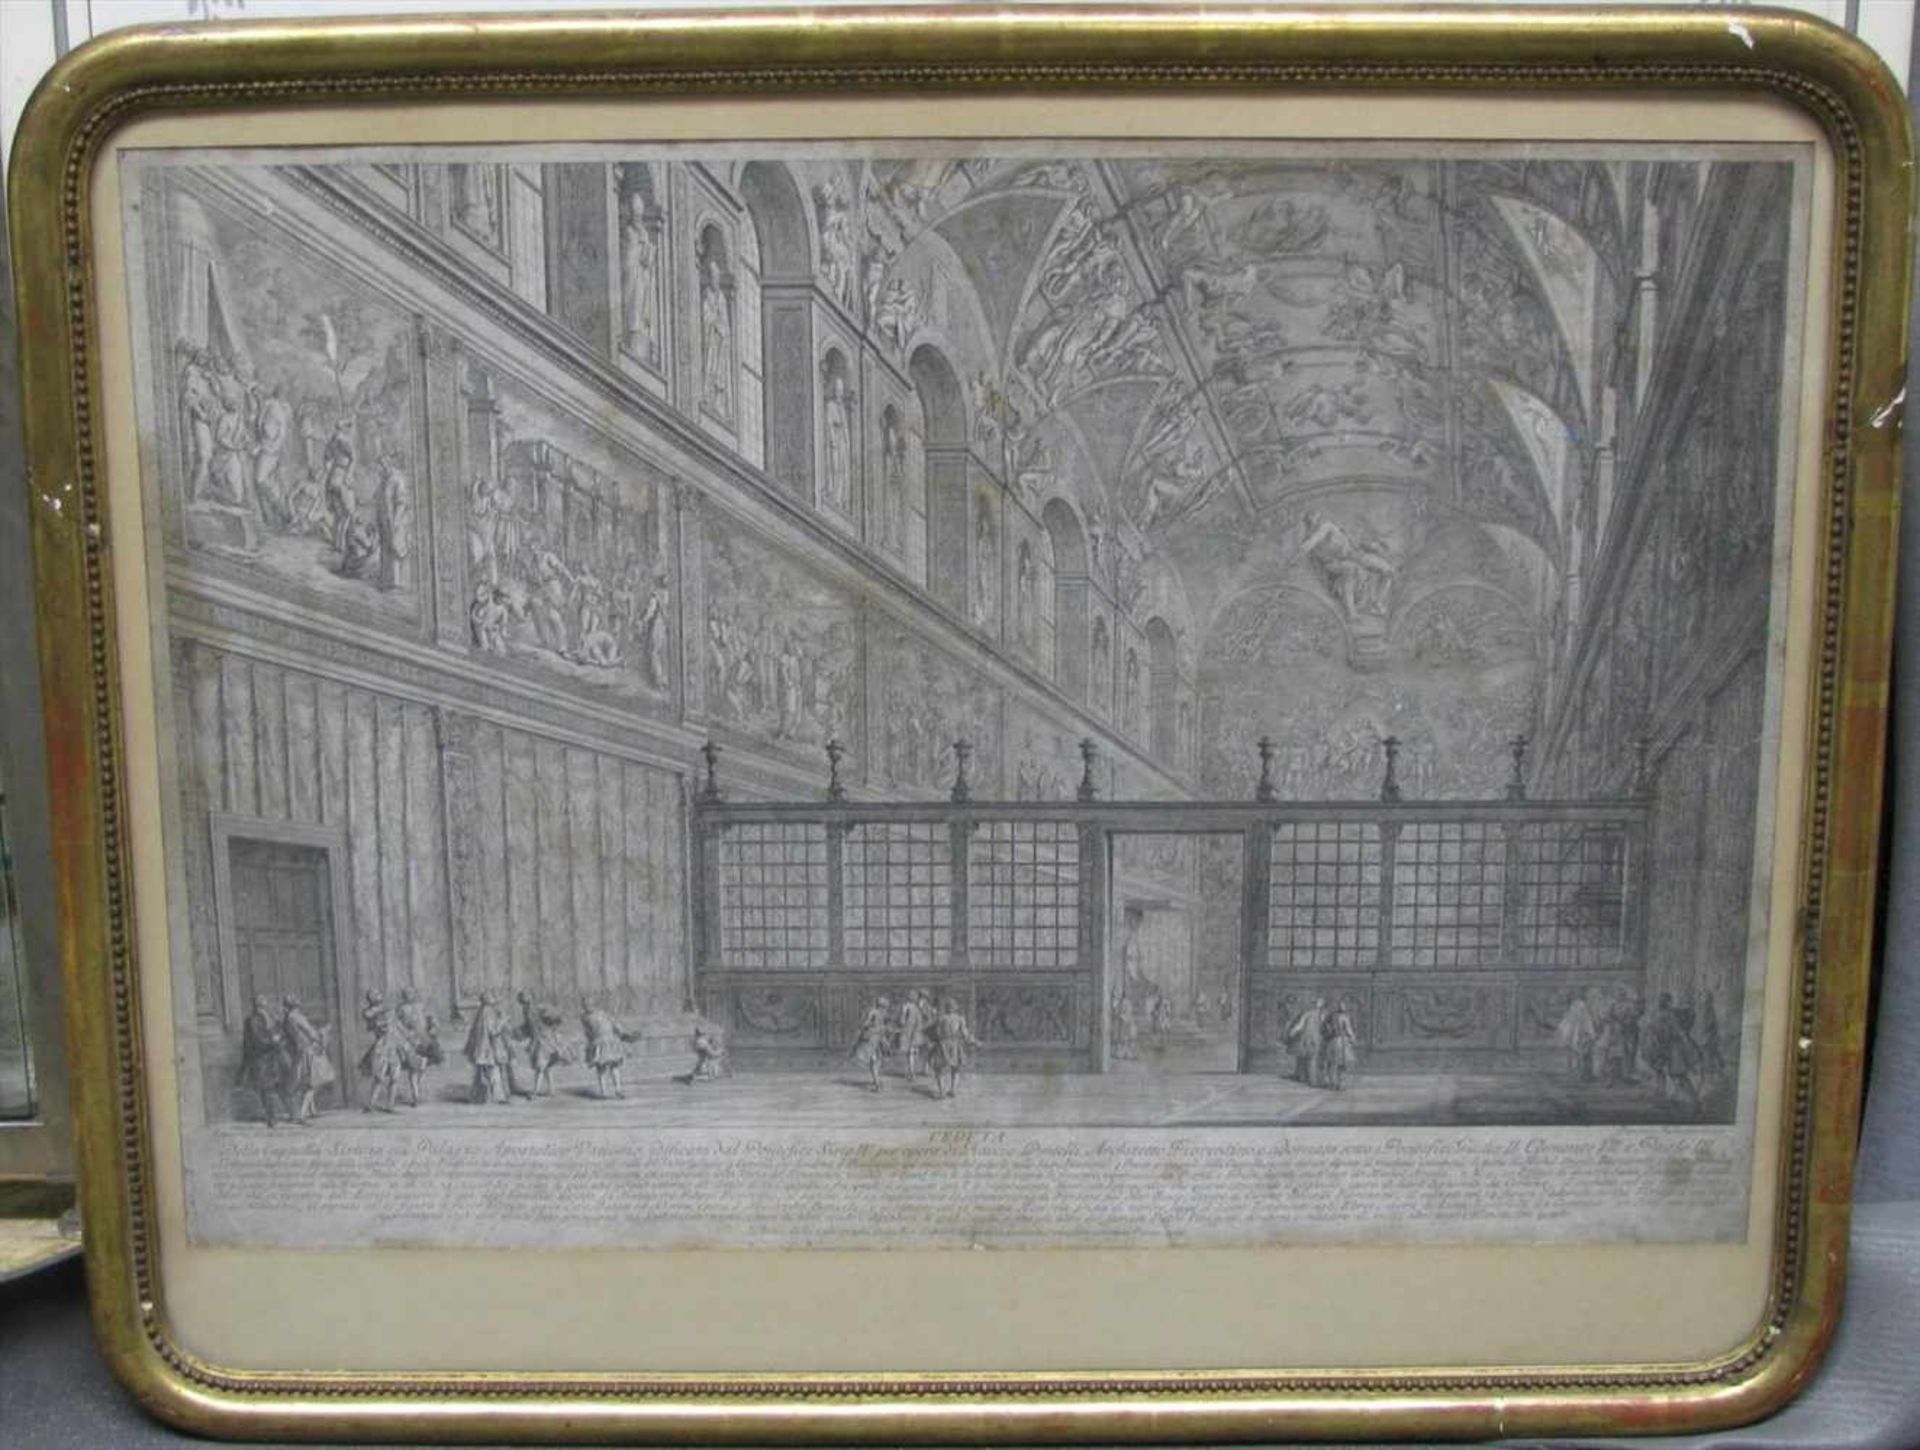 Barbazza, Francesco, Kupferstich, um 1766, "Die Sixtinische Kapelle", 48 x 70 cm, R.